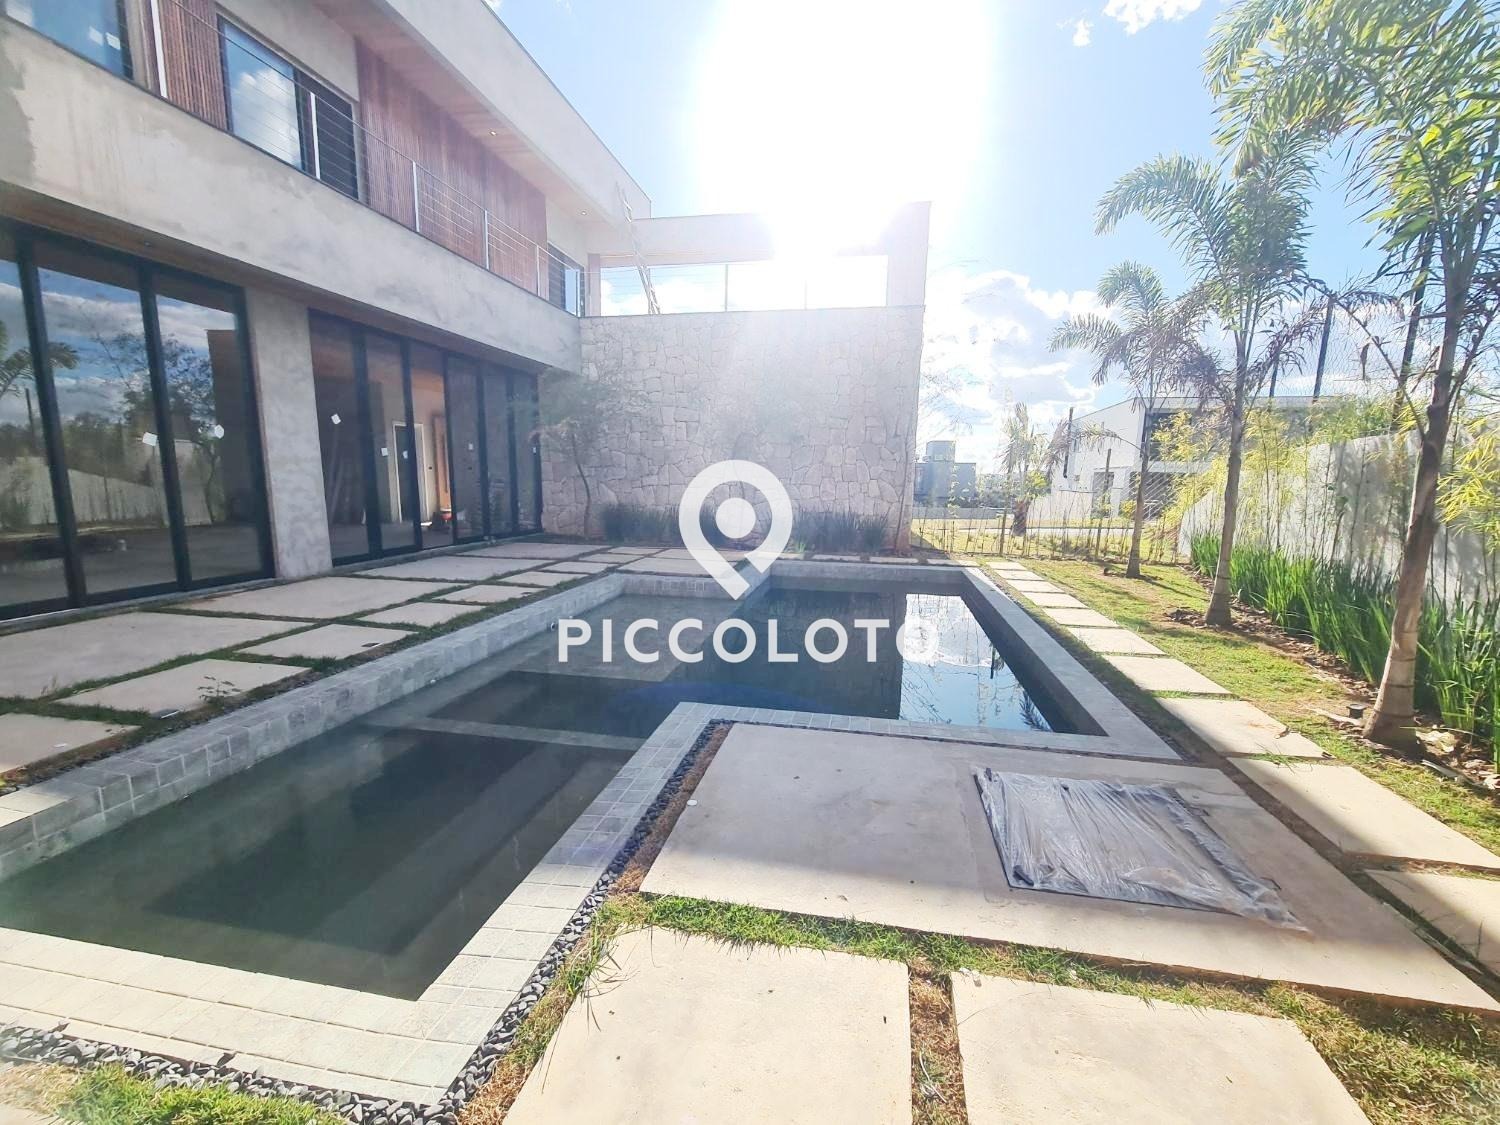 Piccoloto -Casa à venda no Alphaville Dom Pedro 2 em Campinas